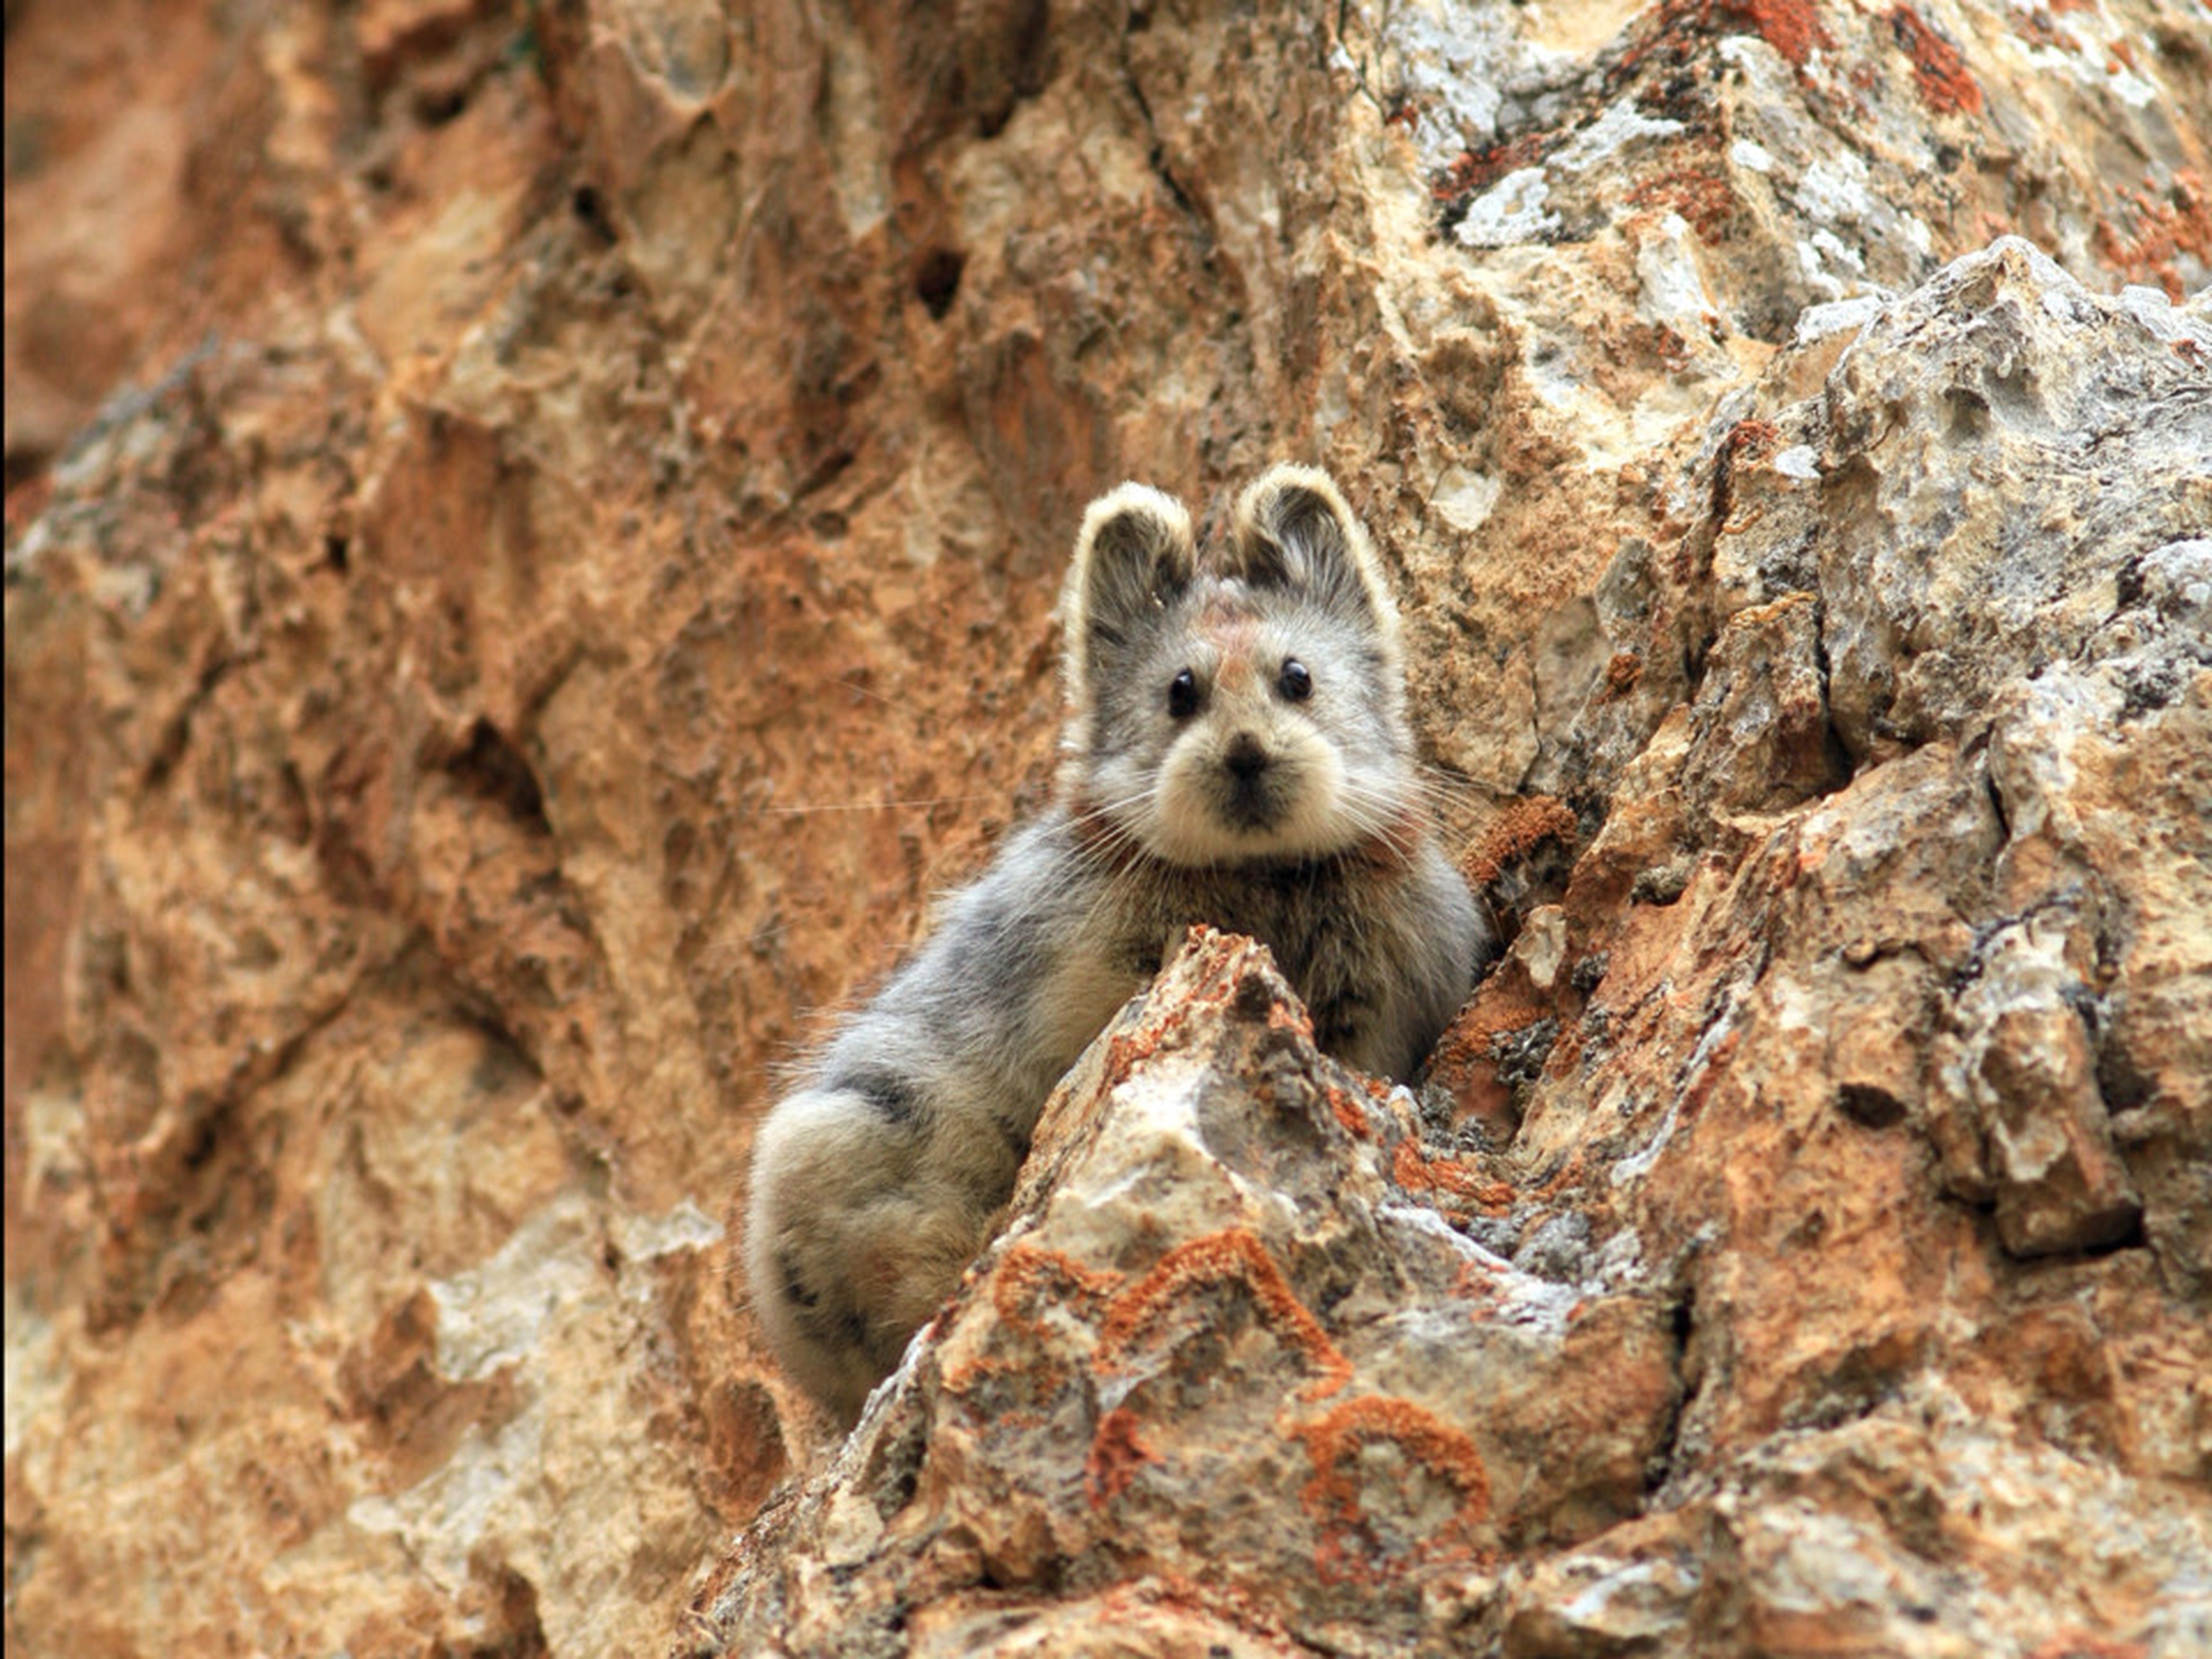 El ili pika fue fotografiado por primera vez en más de 20 años el 9 de julio de 2014 por Weidong Li, el conversacionista que descubrió la especie.